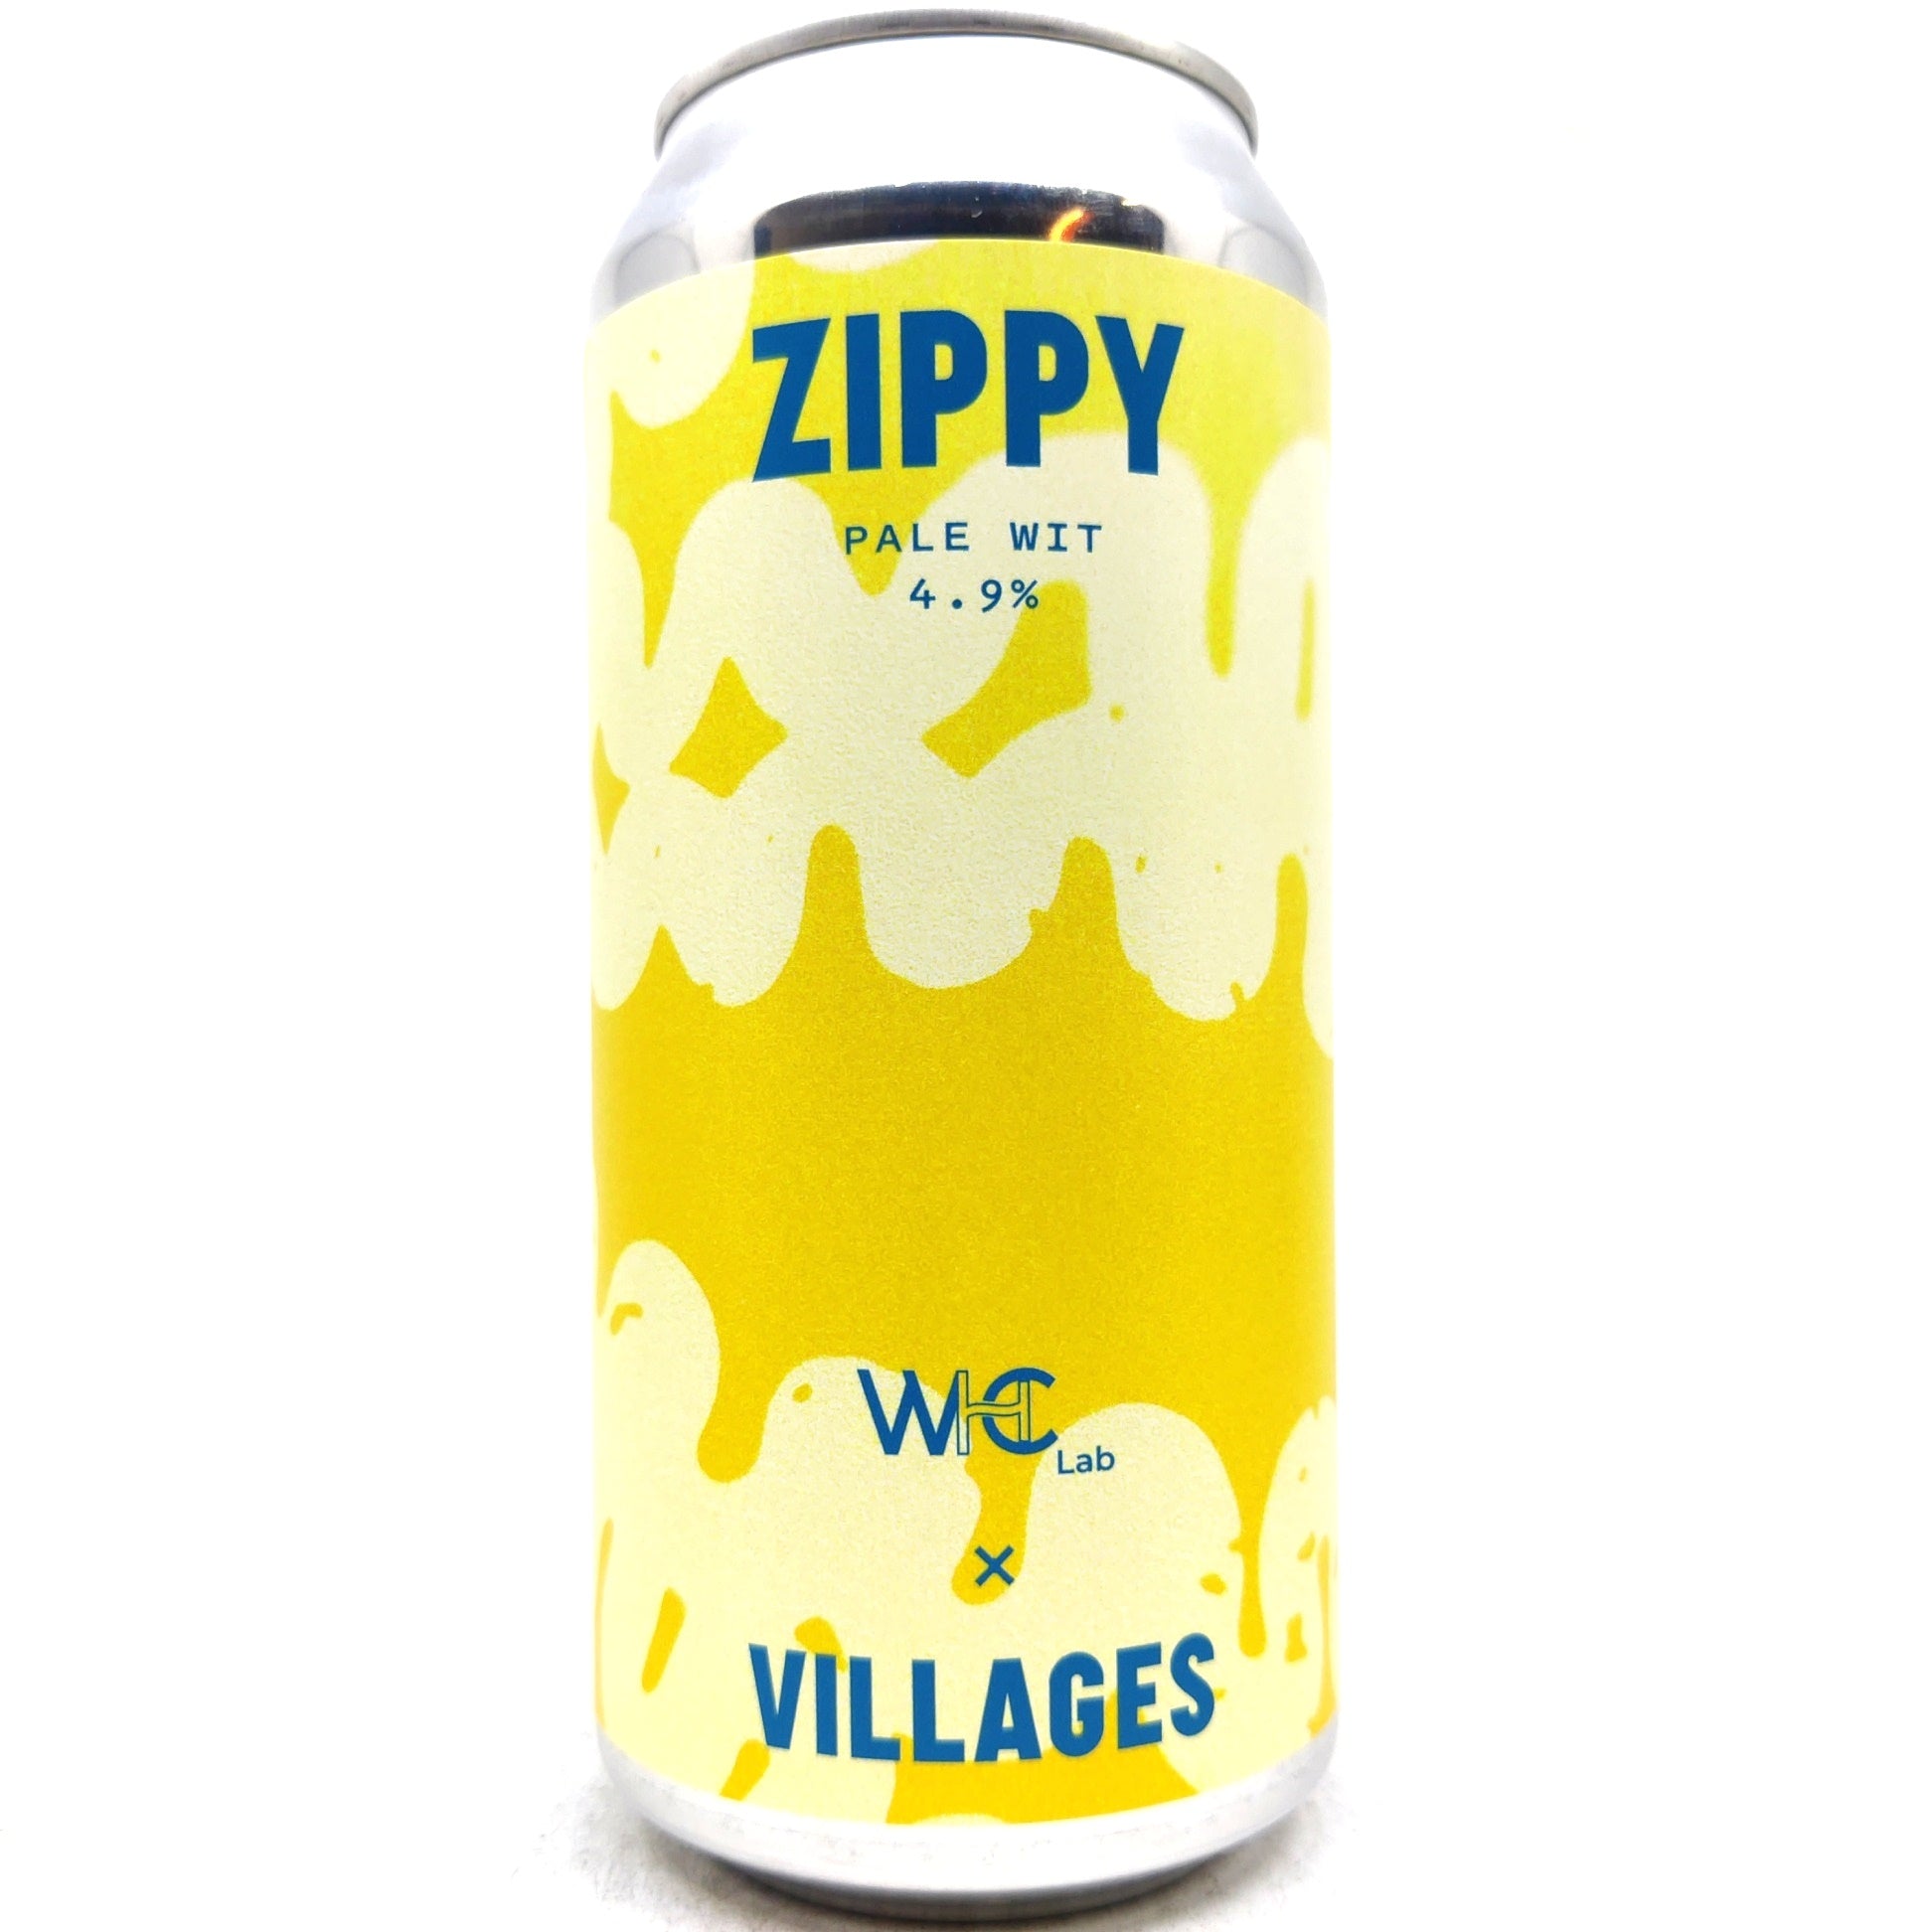 Villages Zippy Pale Wit 4.9% (440ml can)-Hop Burns & Black